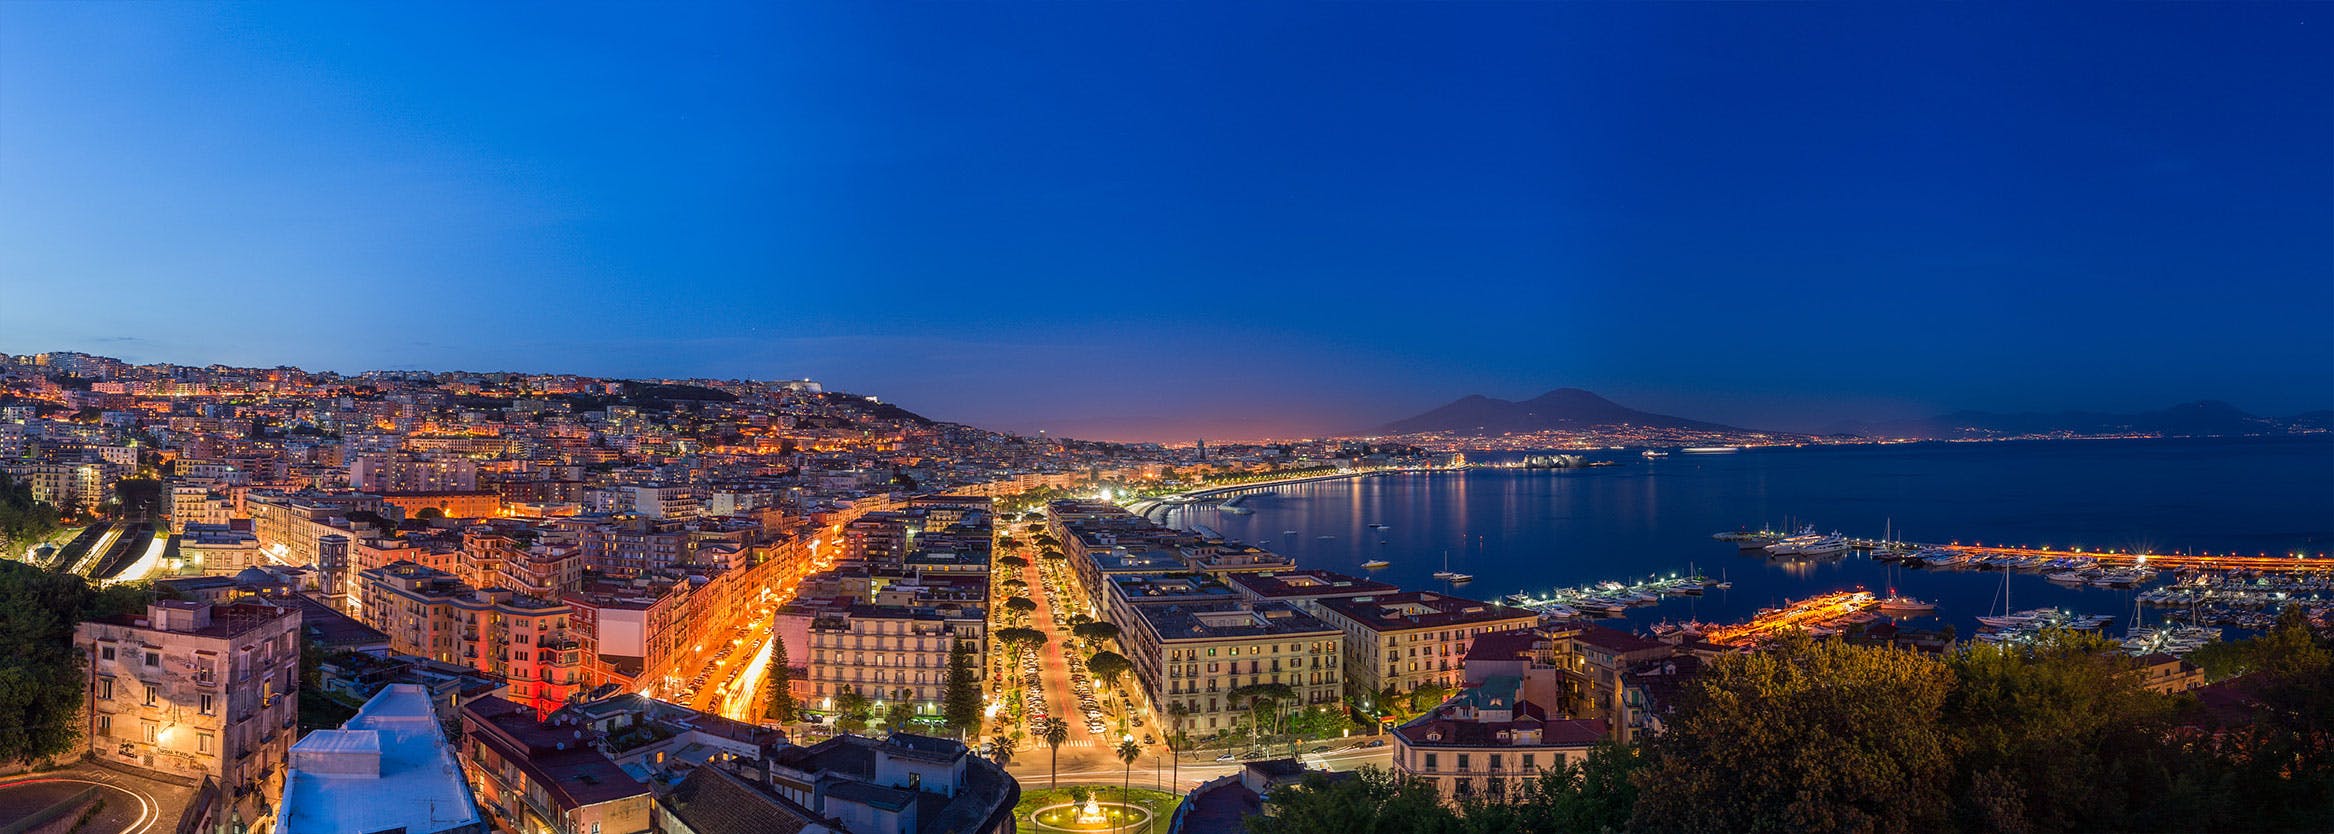 Vista del Vomero, Napoli